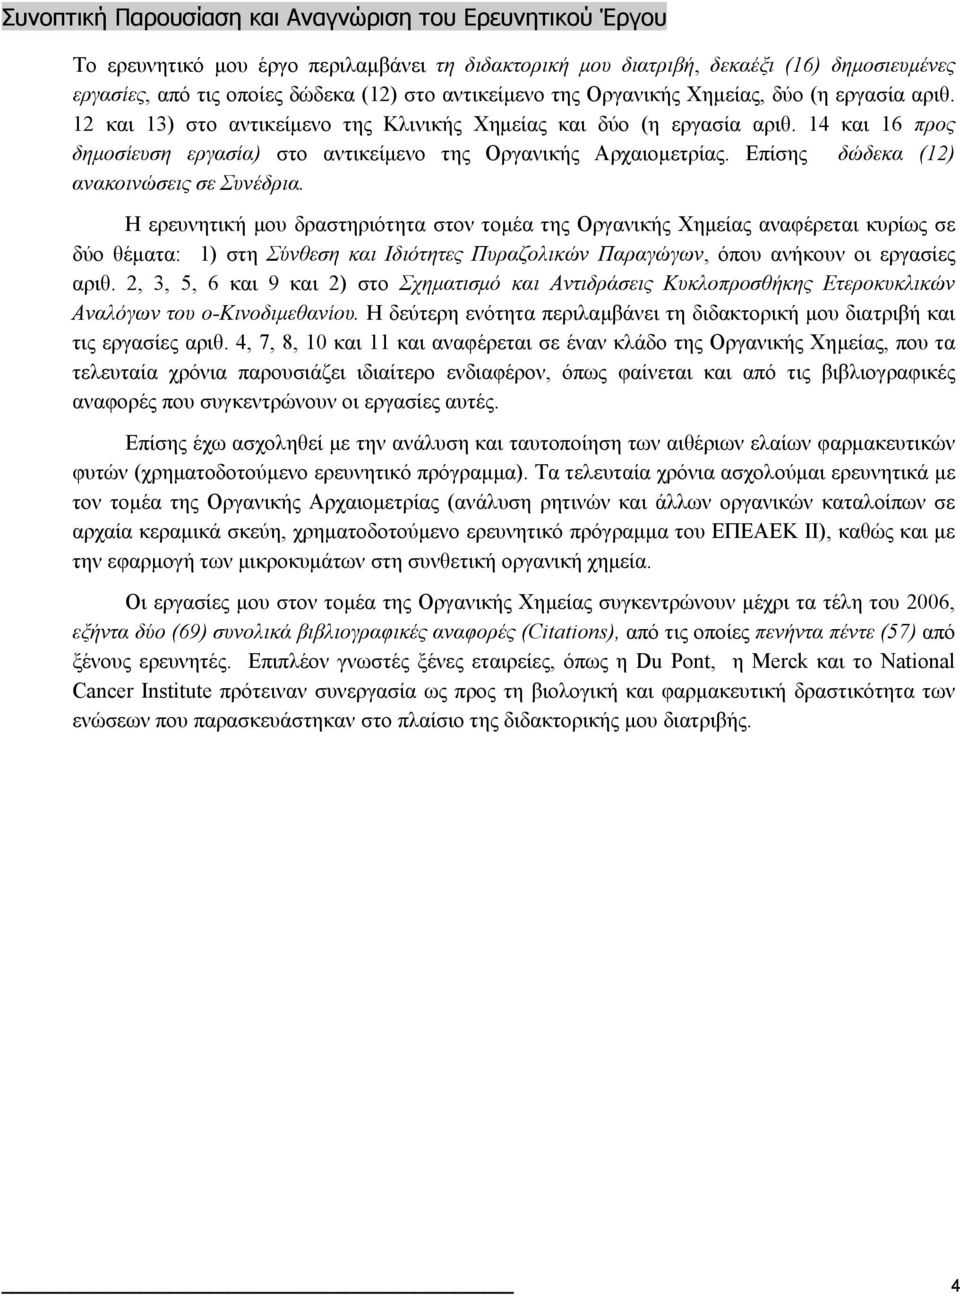 14 και 16 προς δημοσίευση εργασία) στο αντικείμενο της Οργανικής Αρχαιομετρίας. Επίσης δώδεκα (12) ανακοινώσεις σε Συνέδρια.